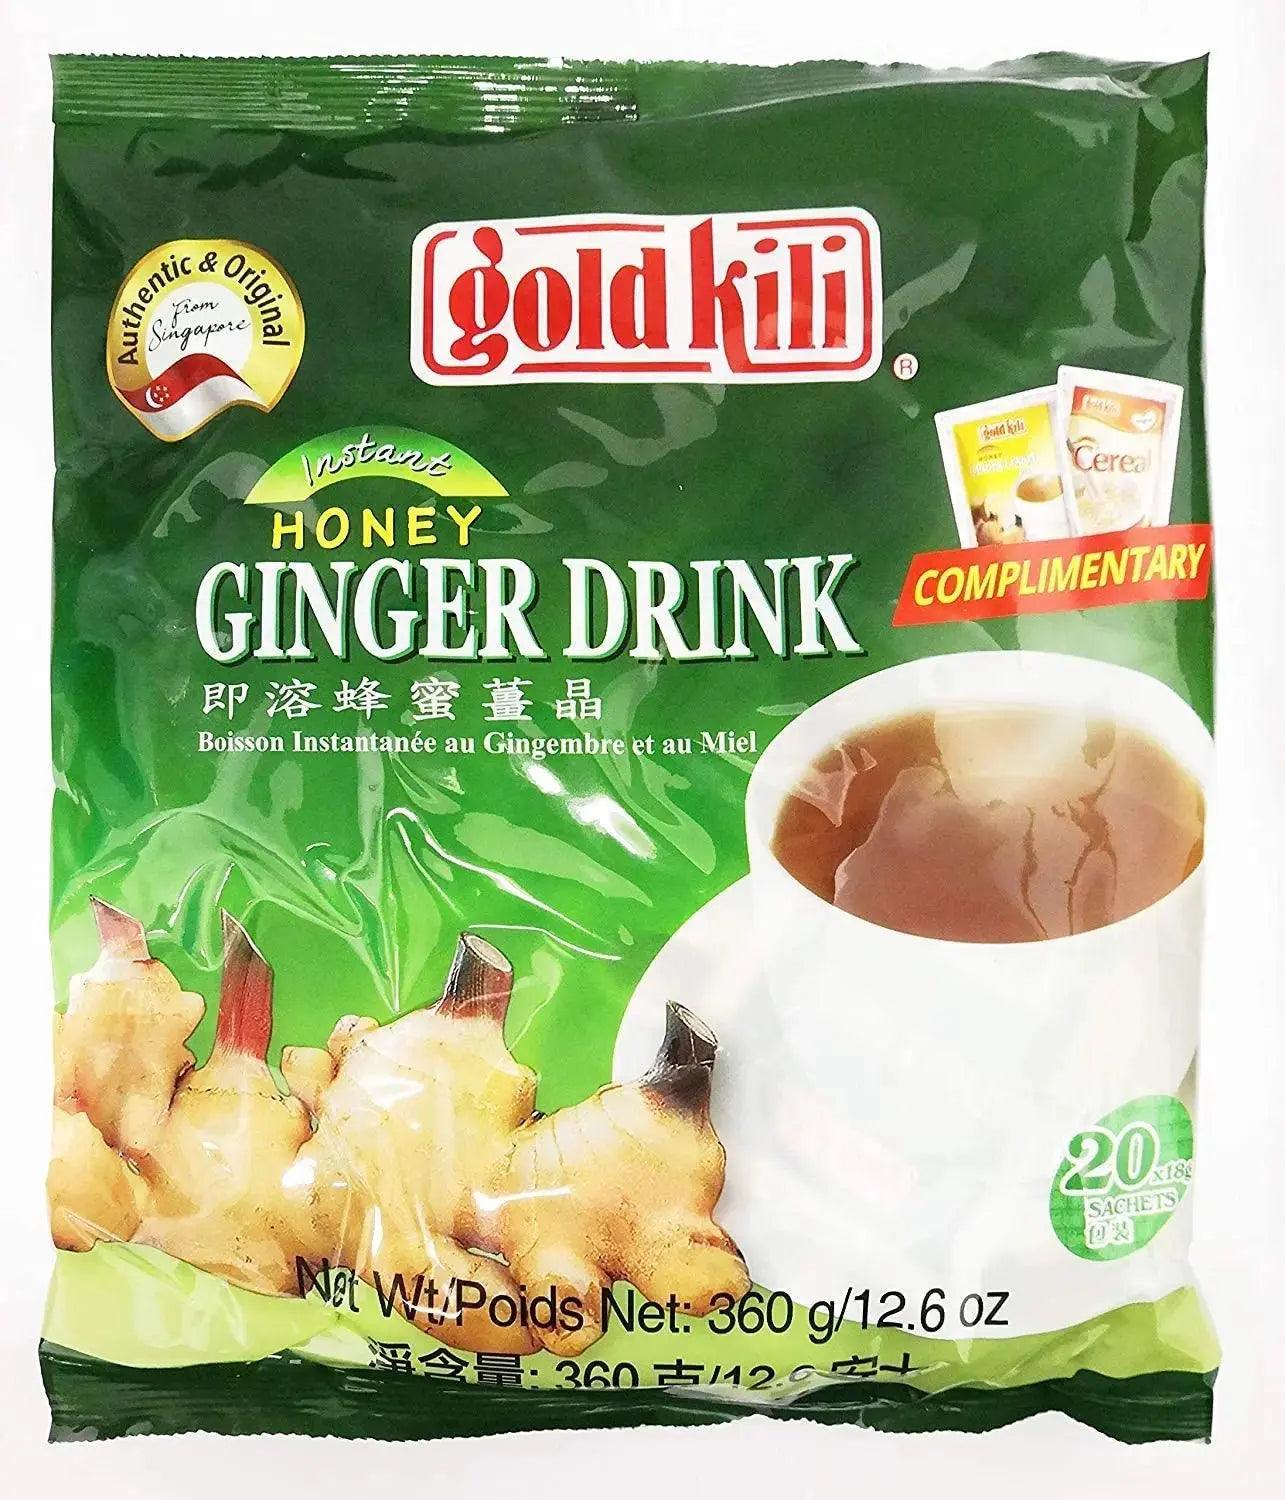 Ginger Drink by Gold Kili, 20 Sachet Total (Pack of 20 Sachets) - Honesty Sales U.K